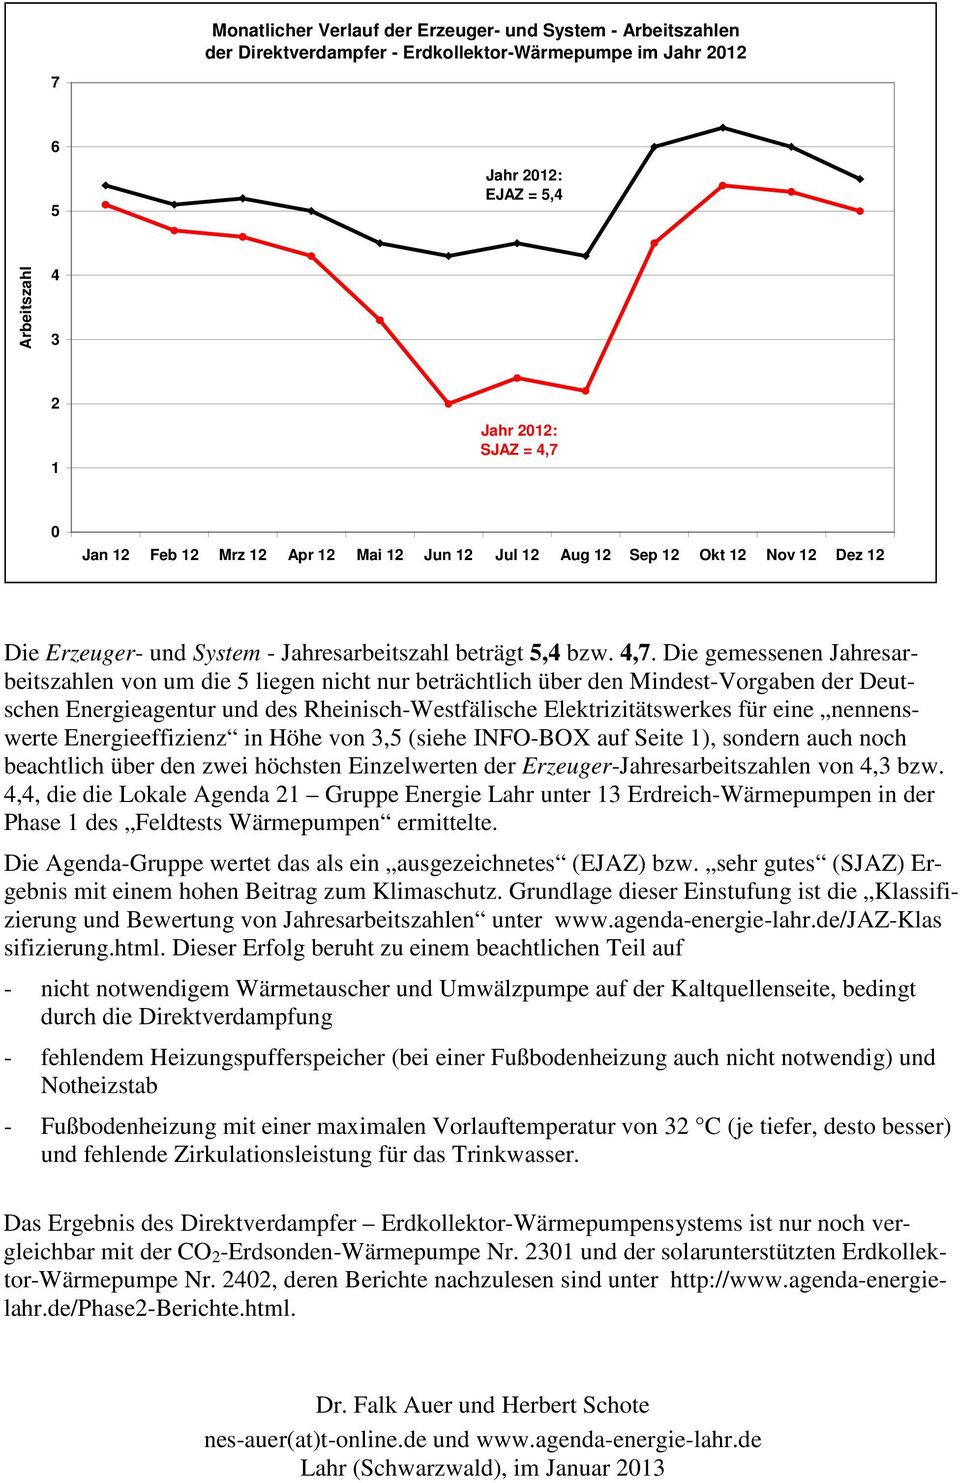 Die gemessenen Jahresarbeitszahlen von um die 5 liegen nicht nur beträchtlich über den Mindest-Vorgaben der Deutschen Energieagentur und des Rheinisch-Westfälische Elektrizitätswerkes für eine